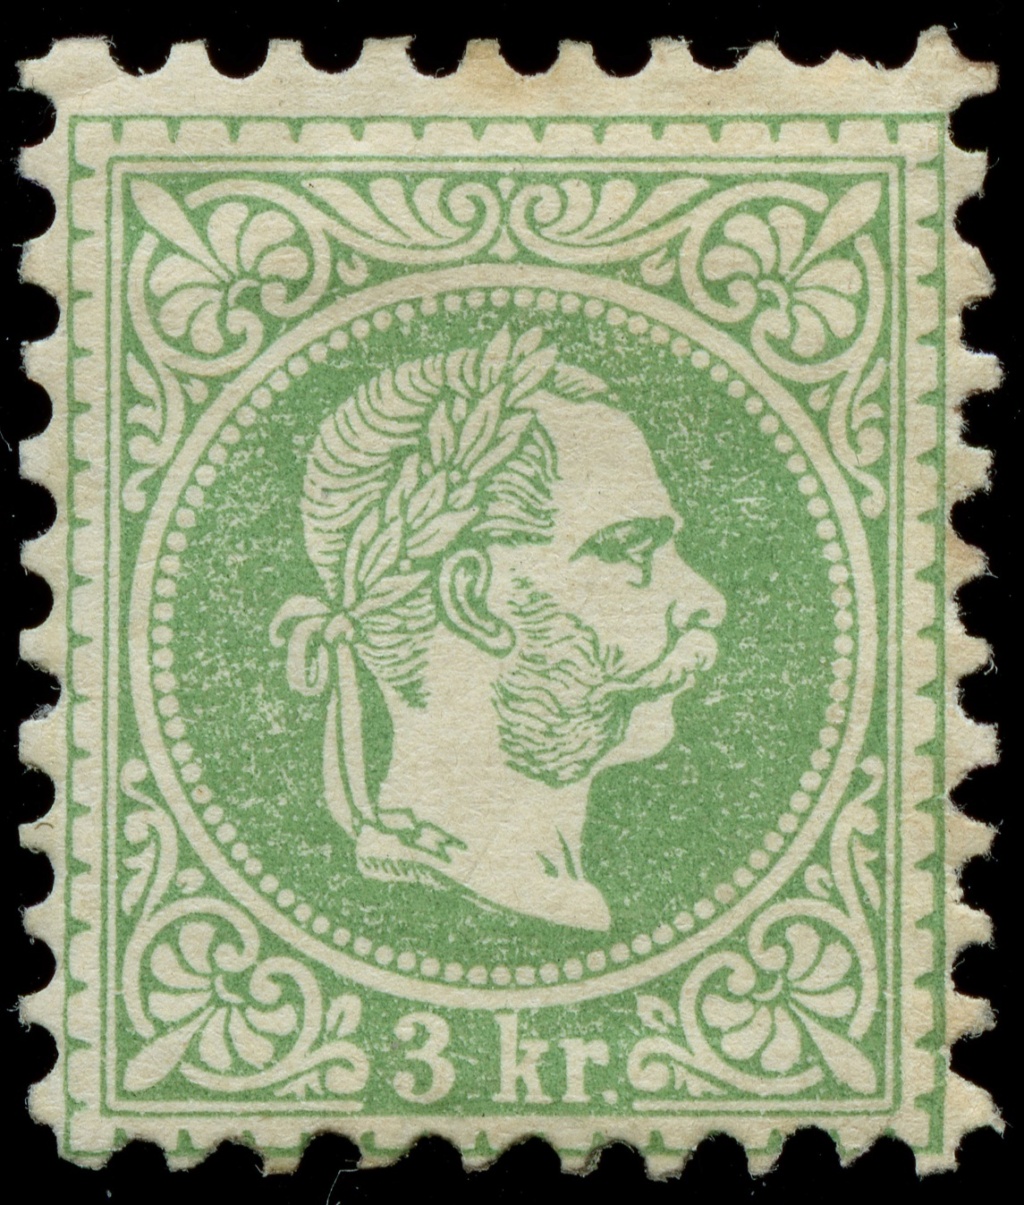 stempel - Freimarken-Ausgabe 1867 : Kopfbildnis Kaiser Franz Joseph I - Seite 23 Ank_3625